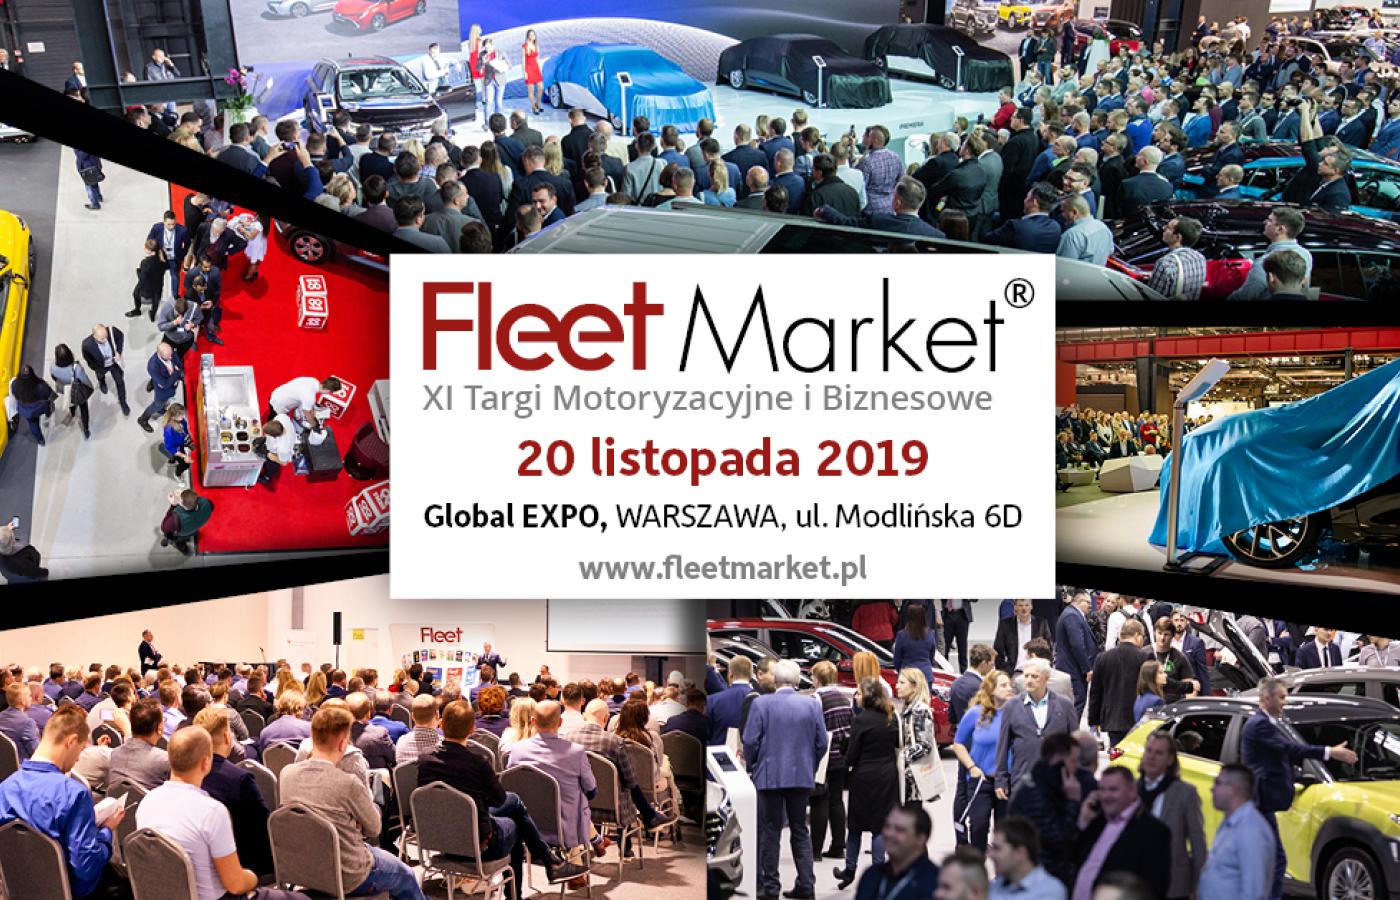 Targi Fleet Market 2019 – spotkanie biznesu z motoryzacją